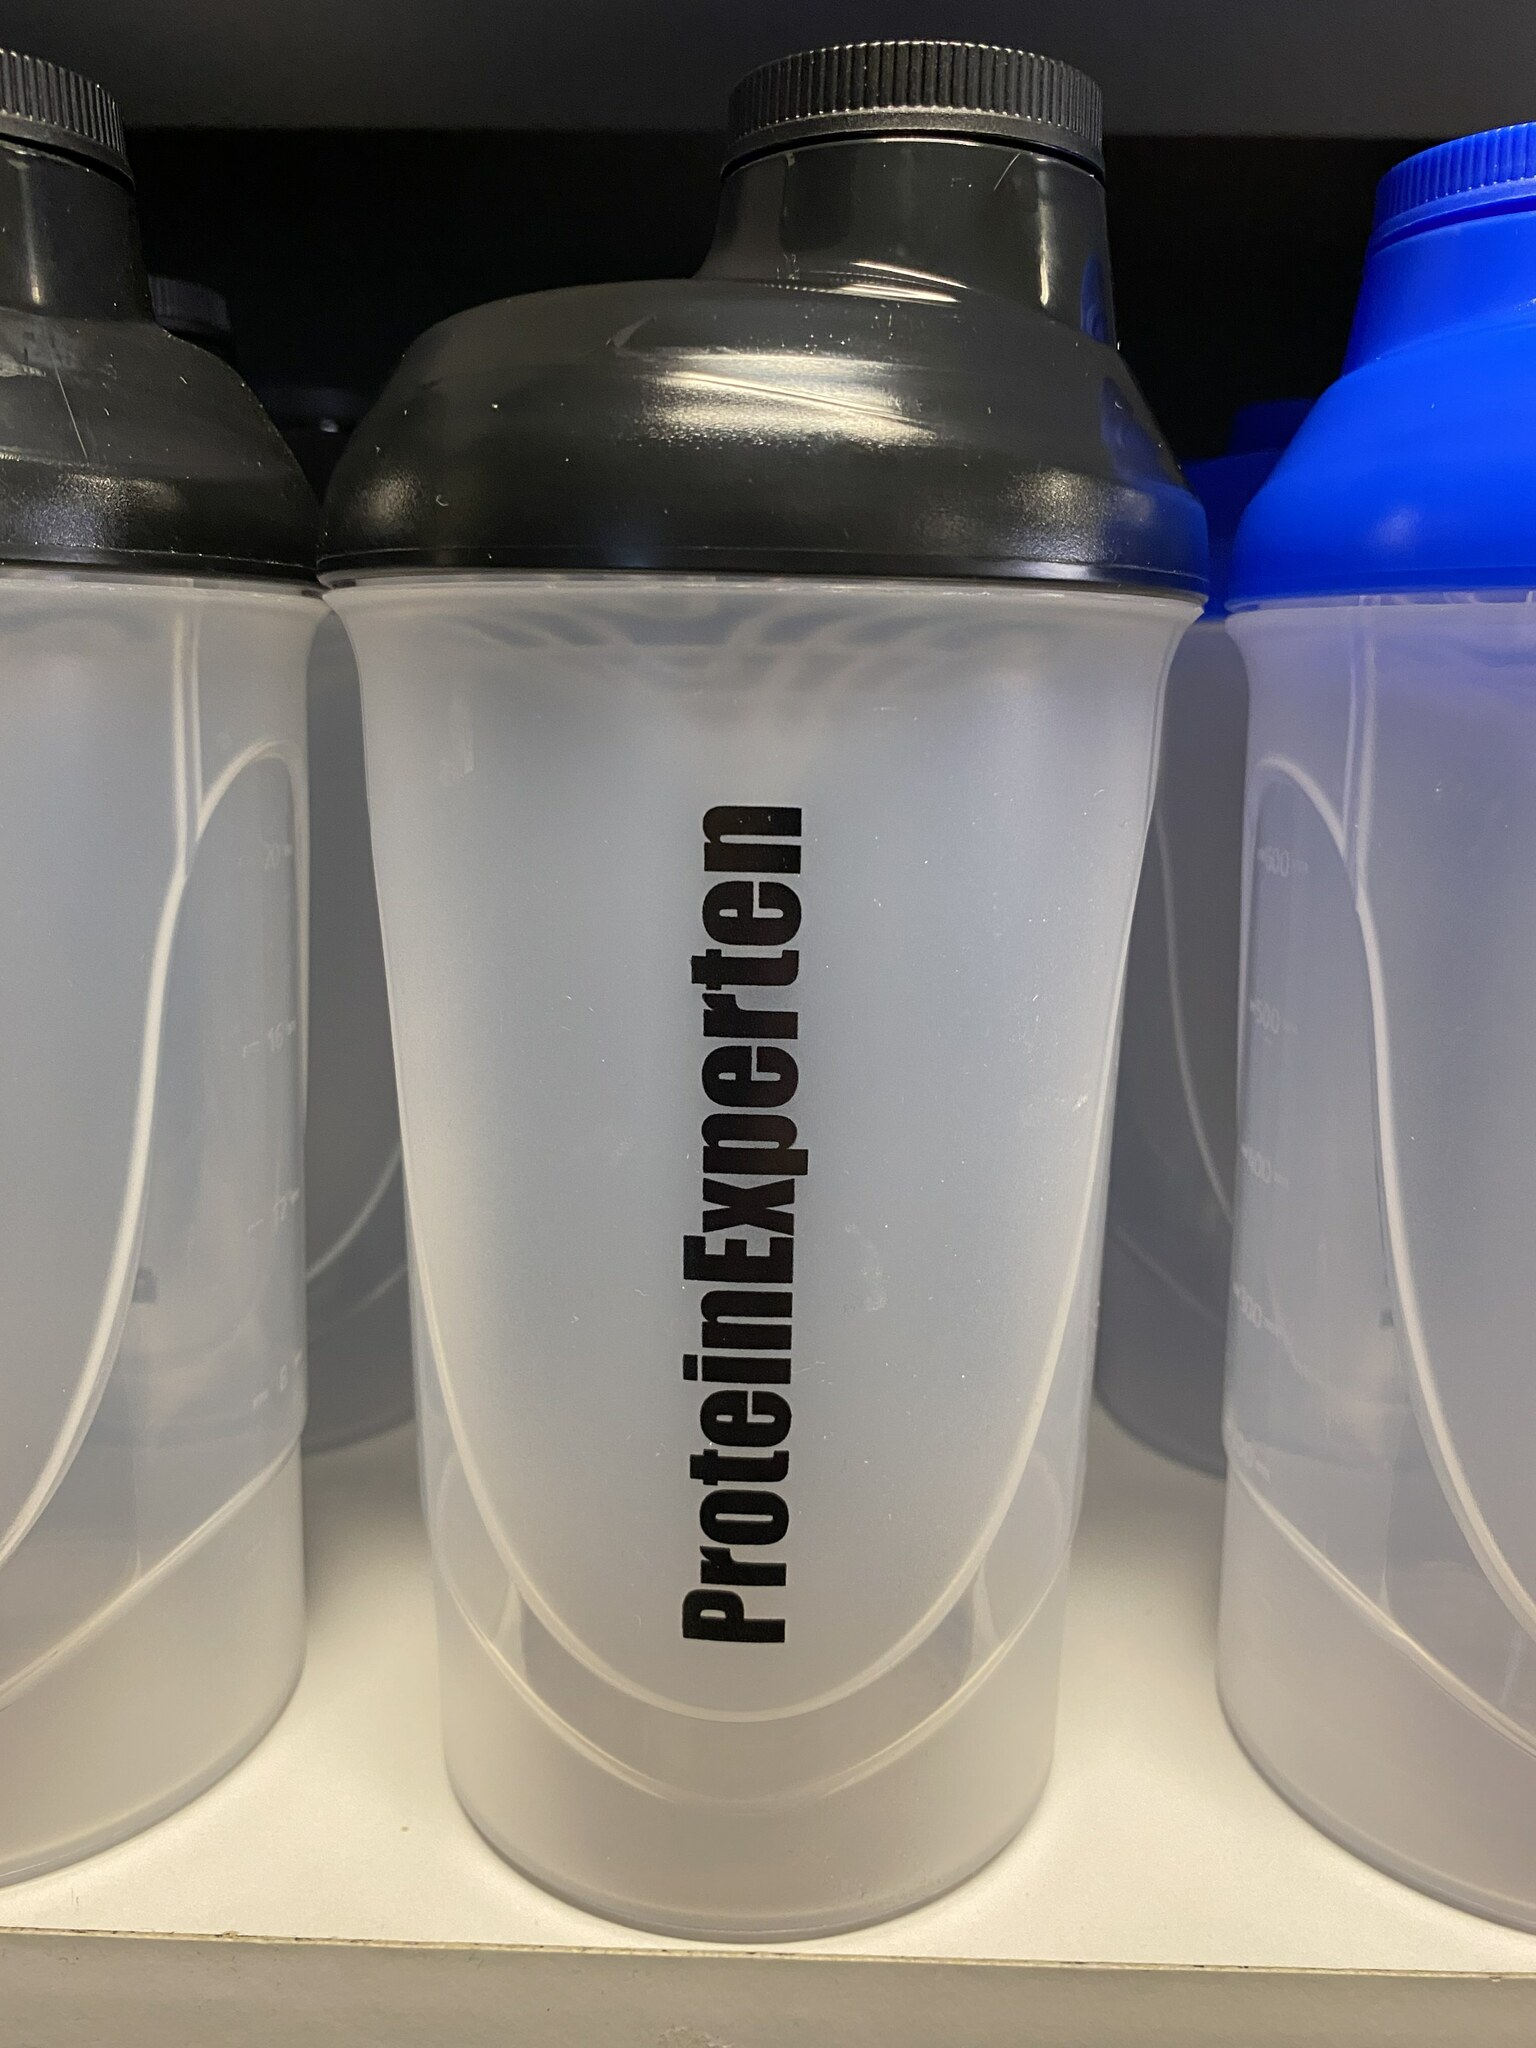 Proteinexperten - Shaker